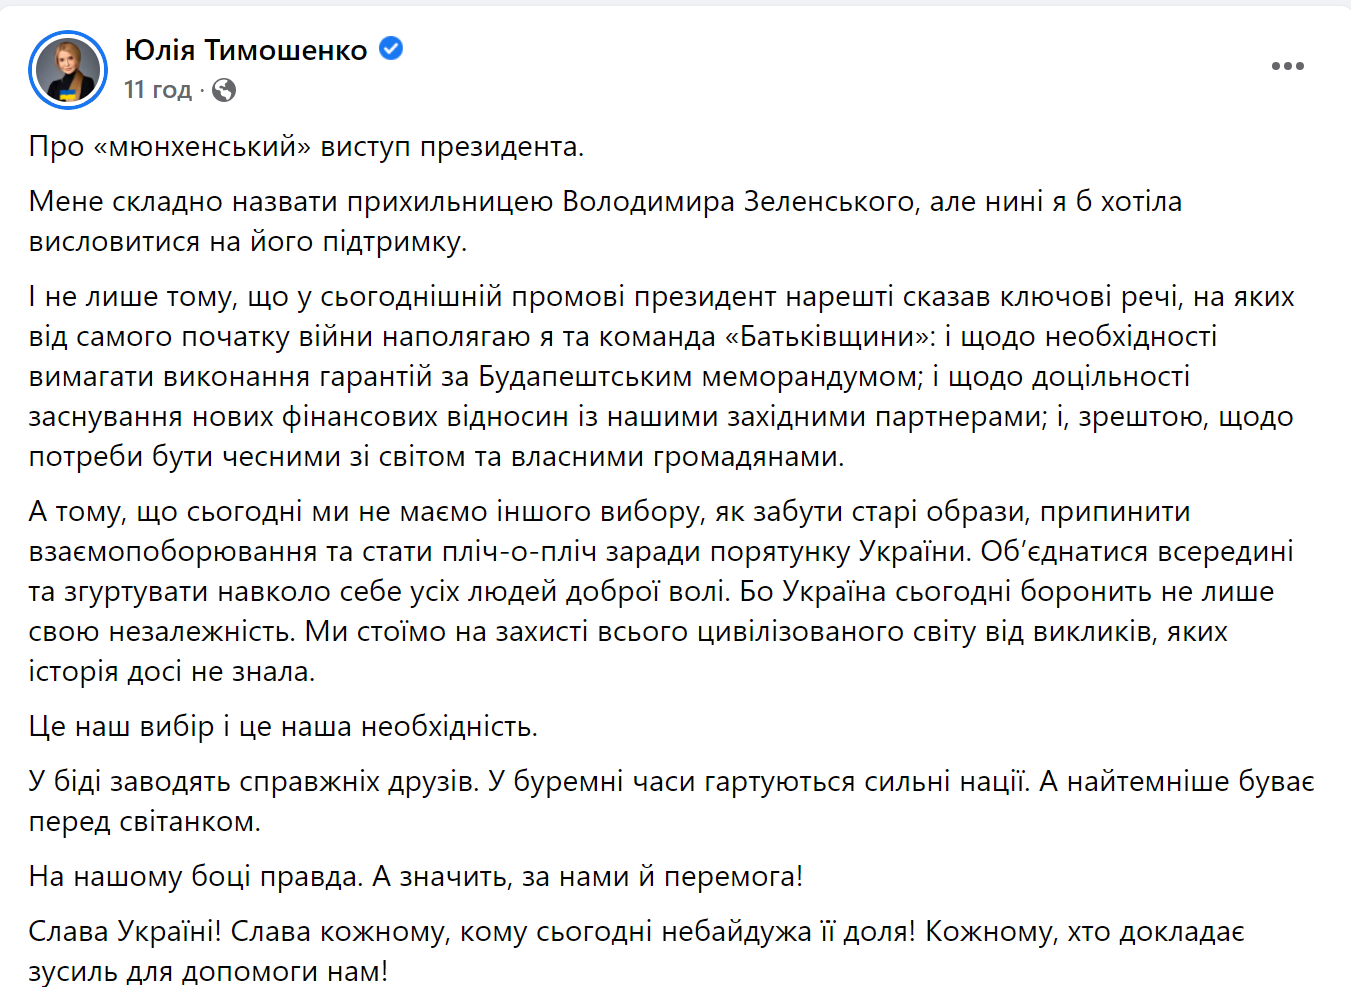 Тимошенко похвалила Зеленського та зробила йому пропозицію